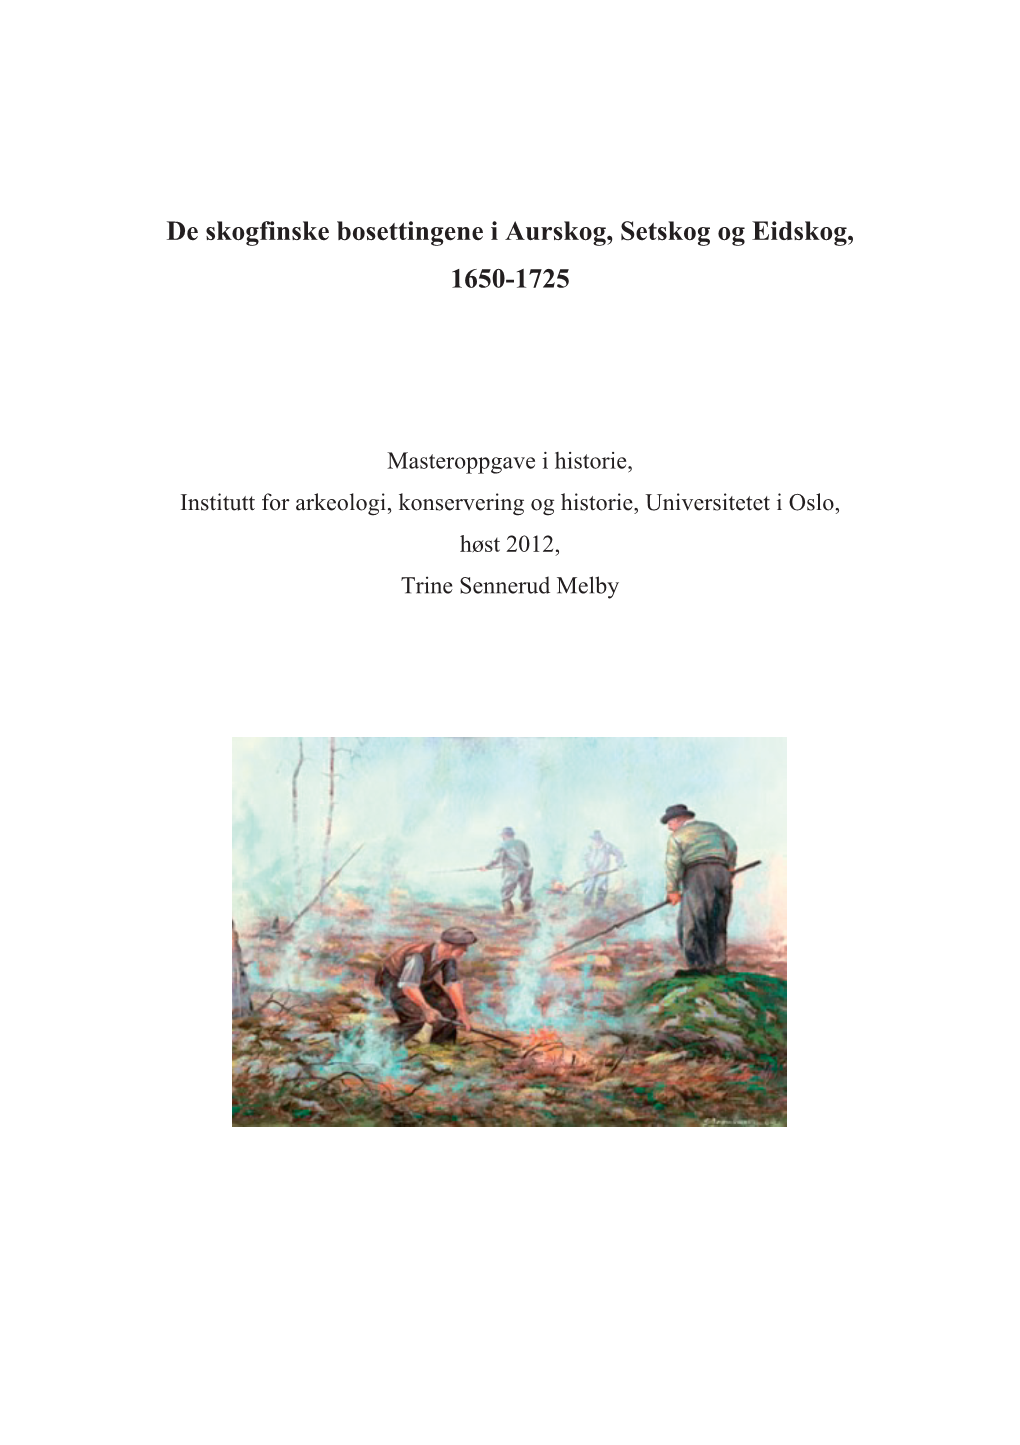 De Skogfinske Bosettingene I Aurskog, Setskog Og Eidskog, 1650-1725